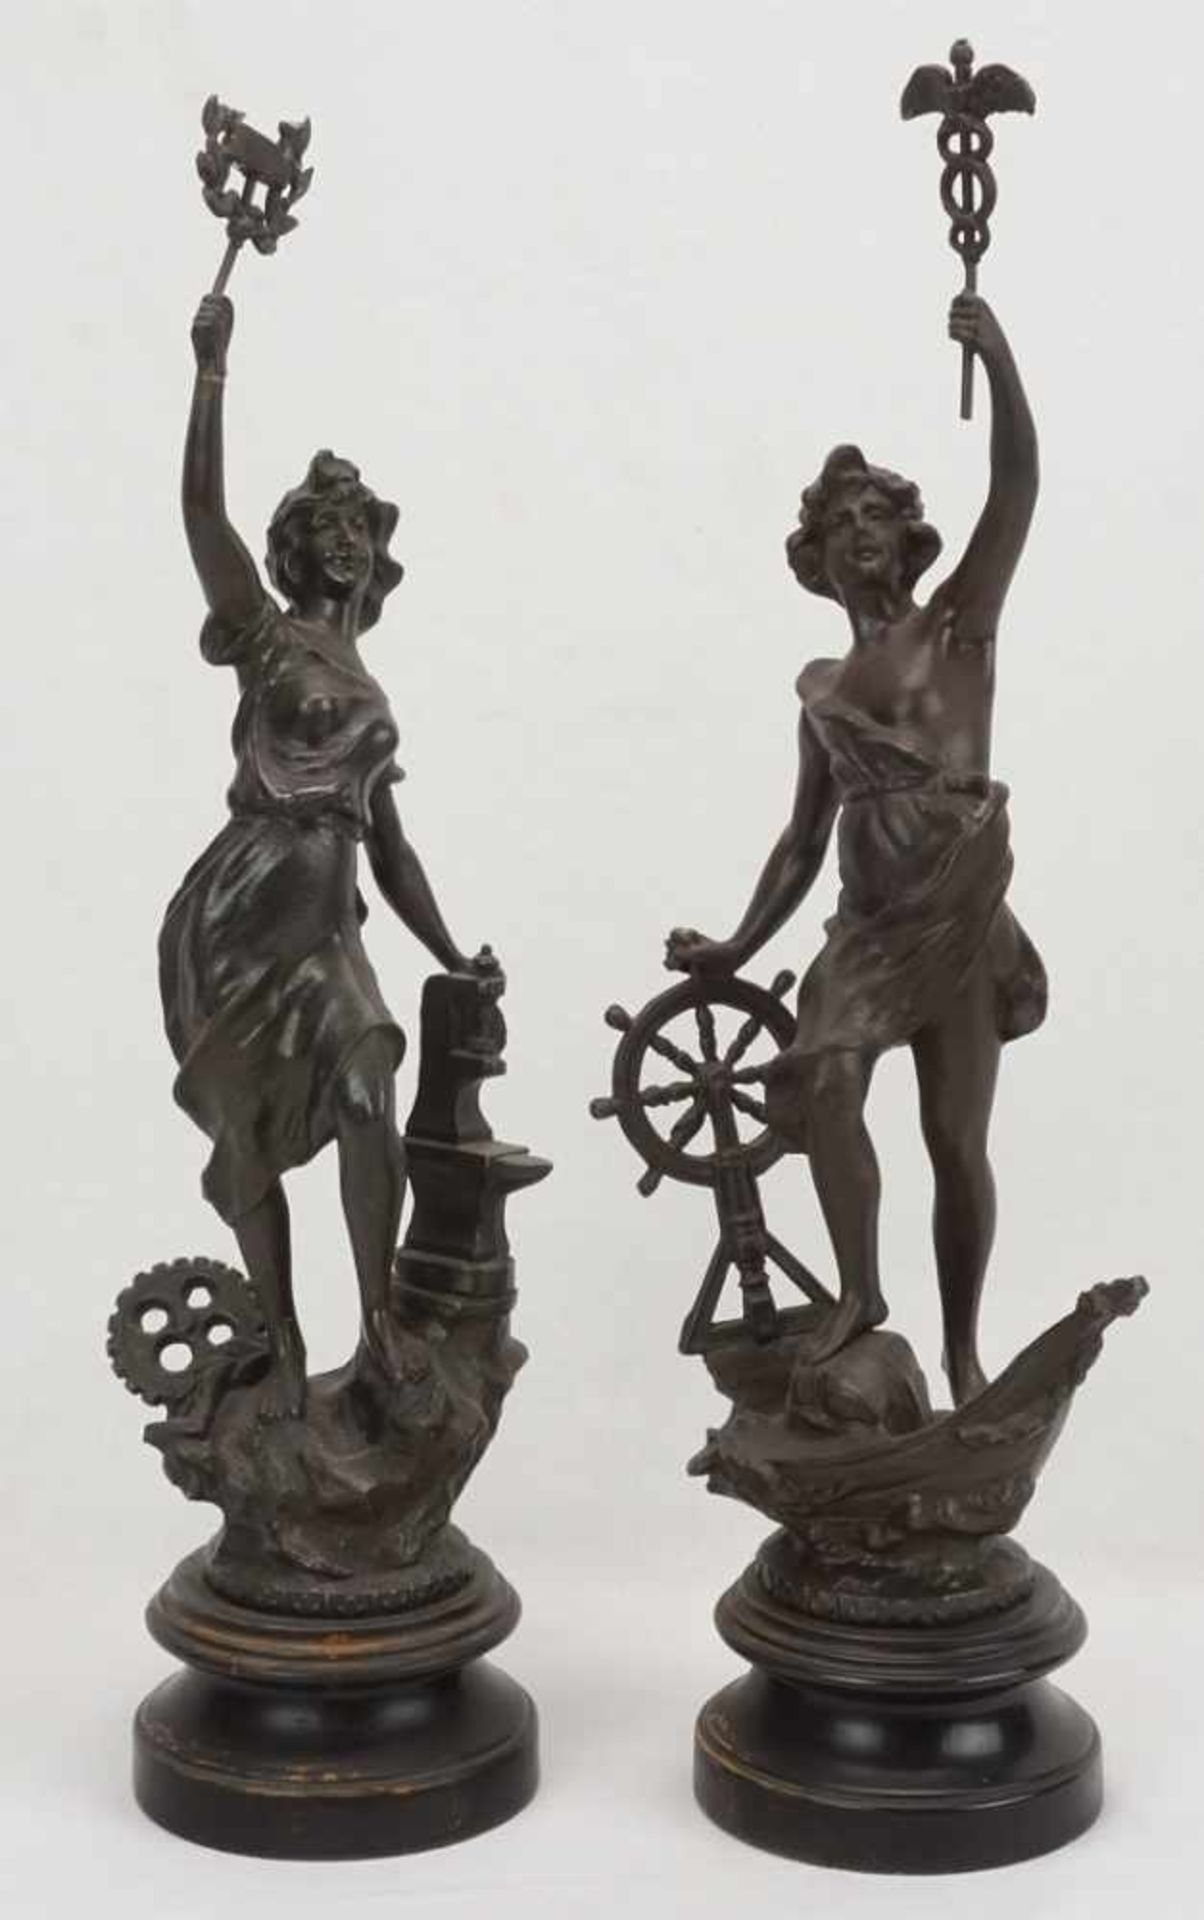 Zwei allegorische Figuren, für Handwerk und Wirtschaft & Handel1) Frauenfigur mit Amboss, Rad und